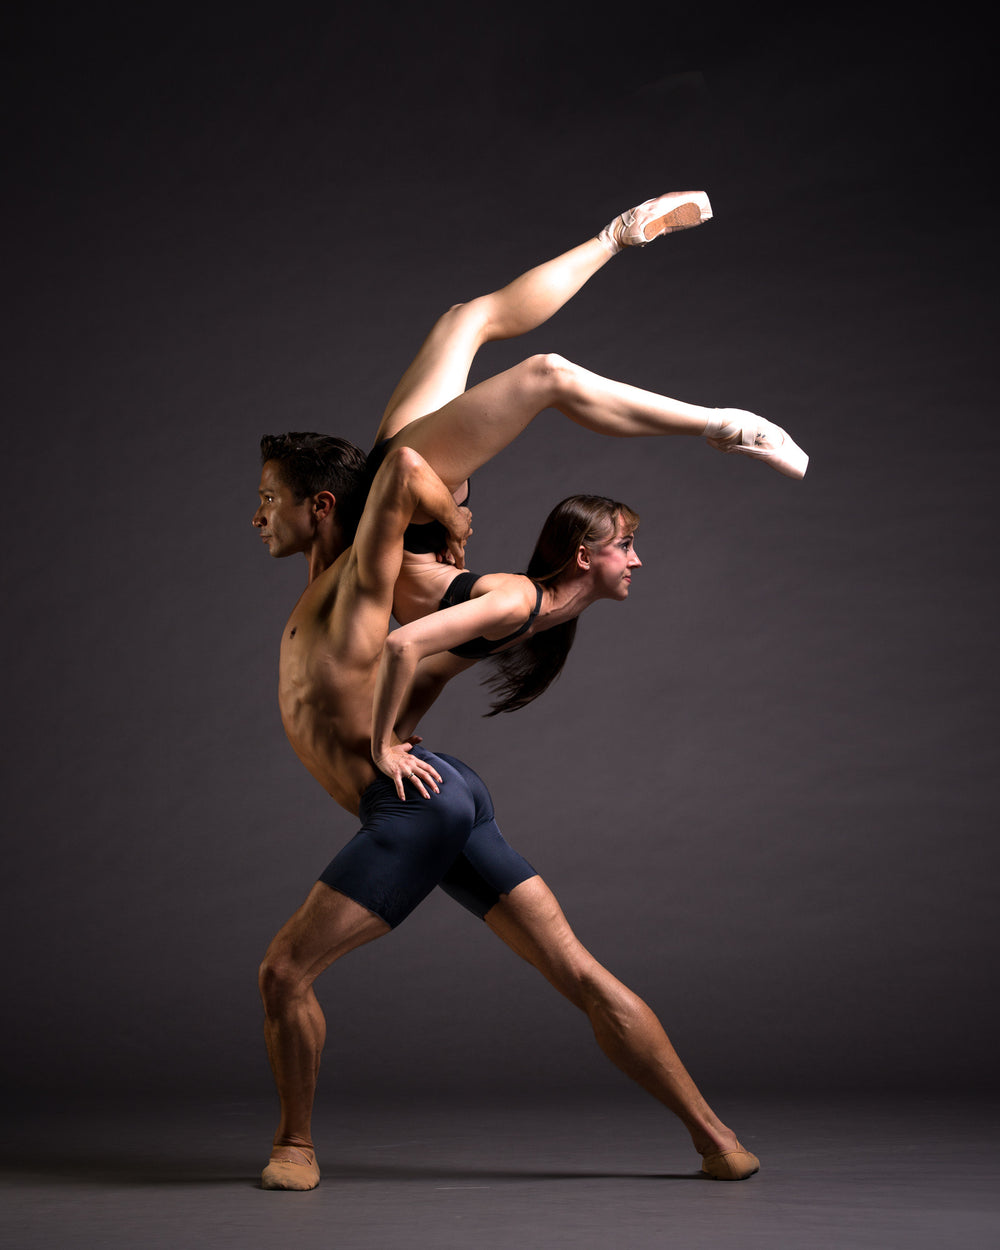 Art Dance Photography Prints - Purchase Online the artwork: Dancers flexibility by Francsico Estevez